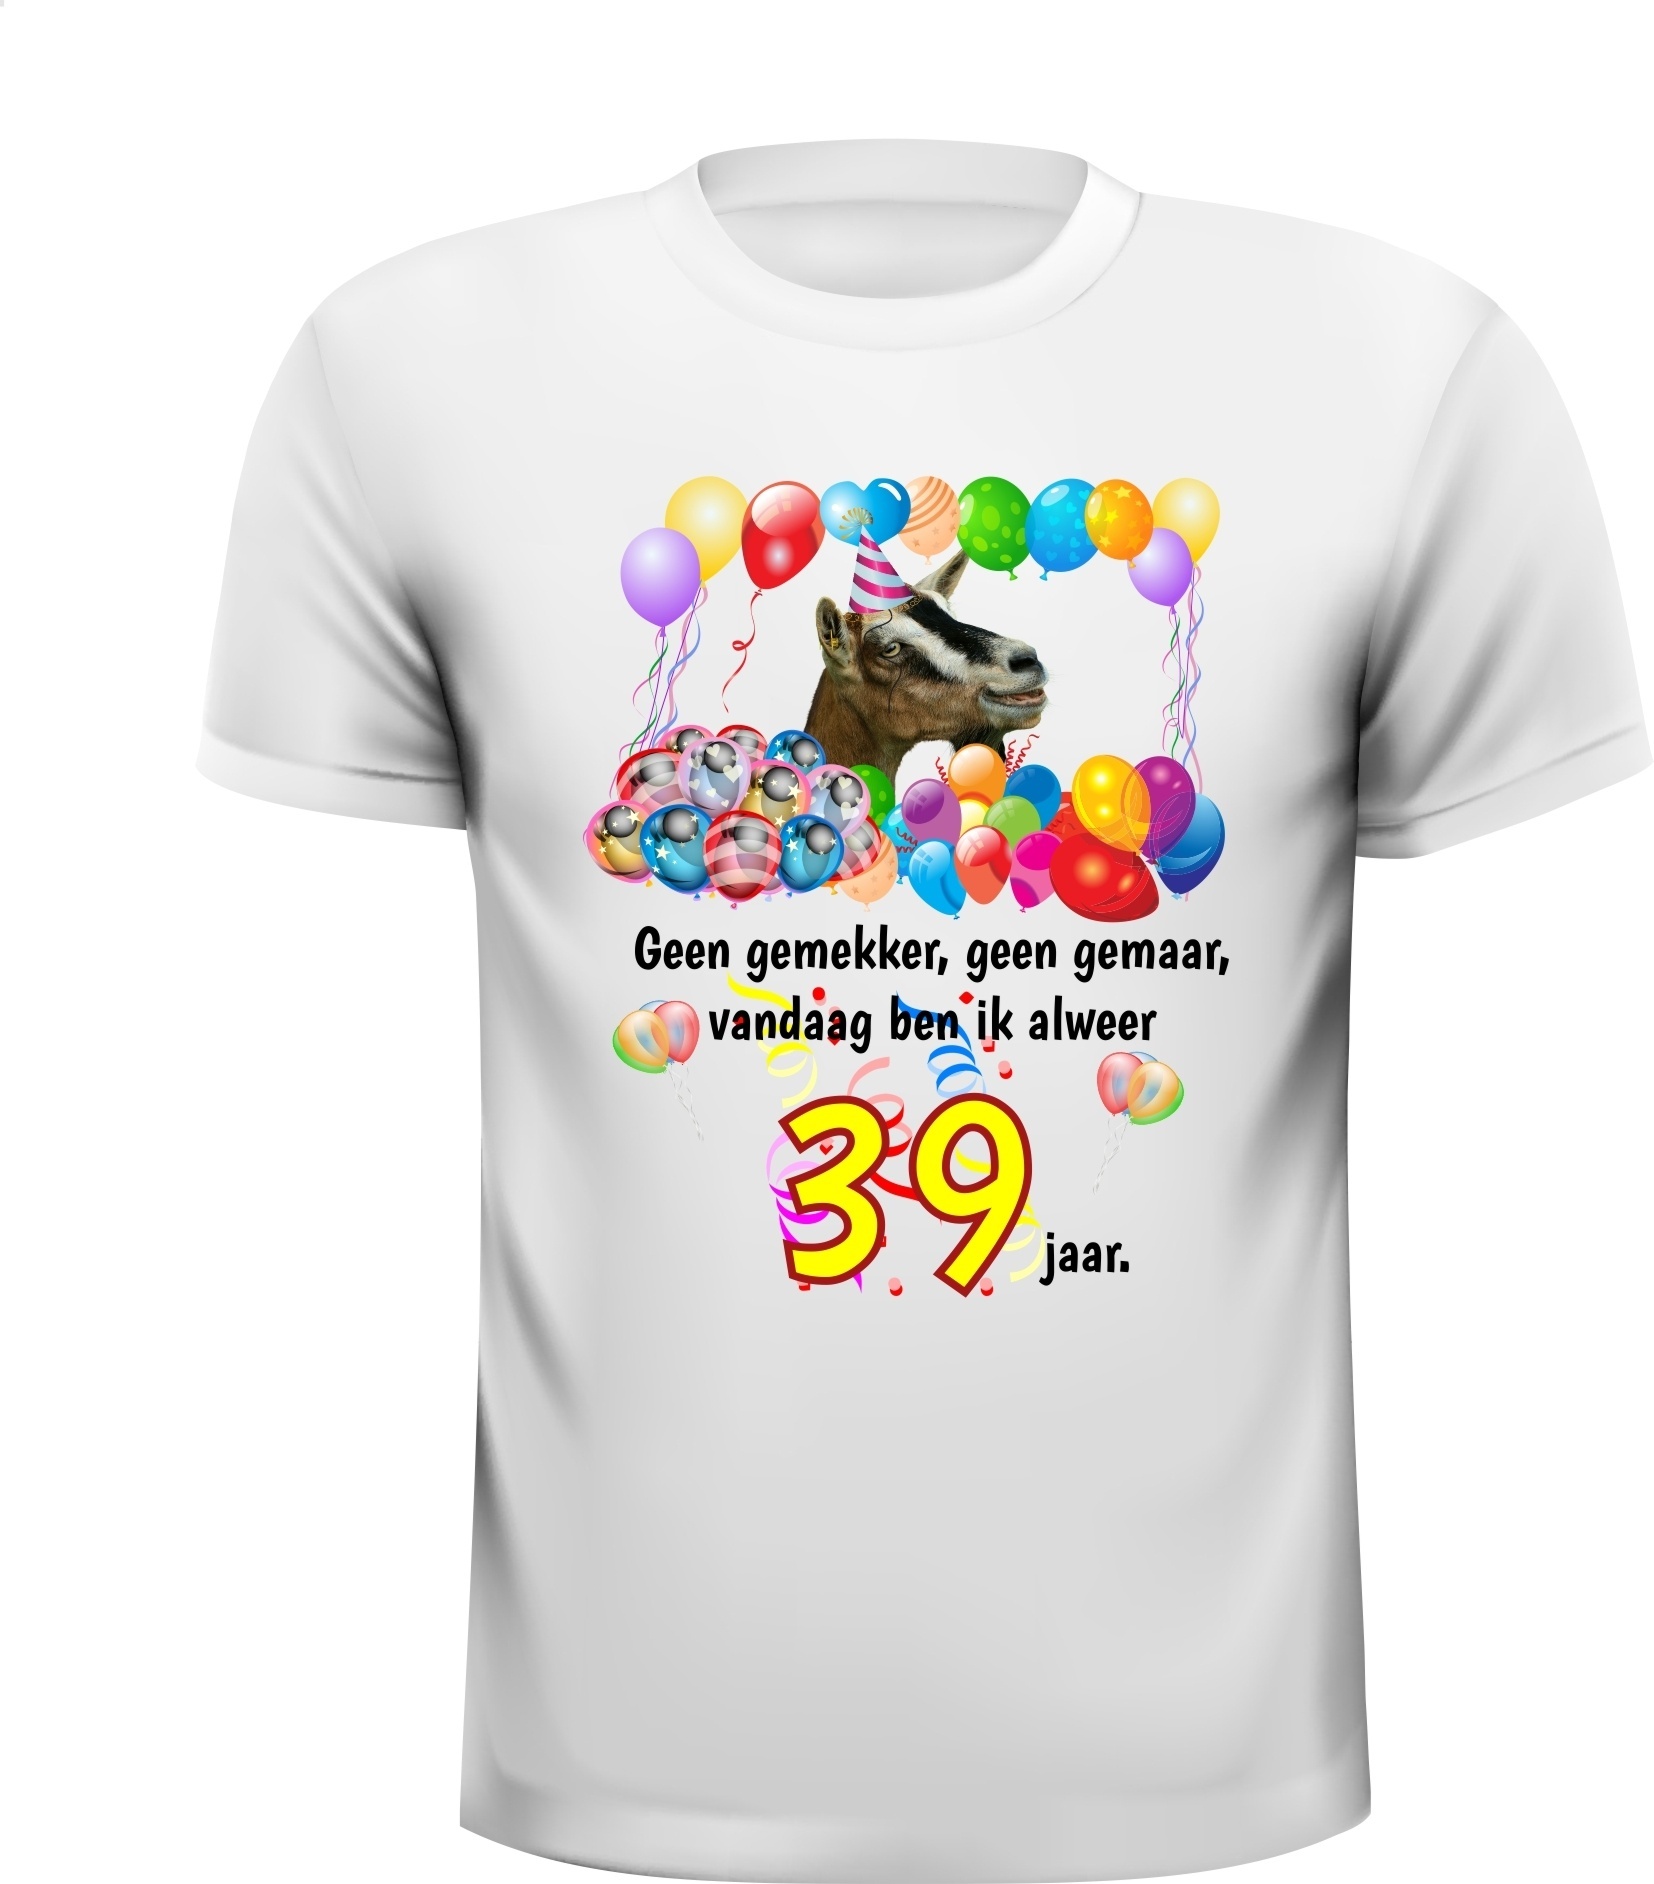 Full colour verjaardag shirt 39 jaar met orginele print en tekst